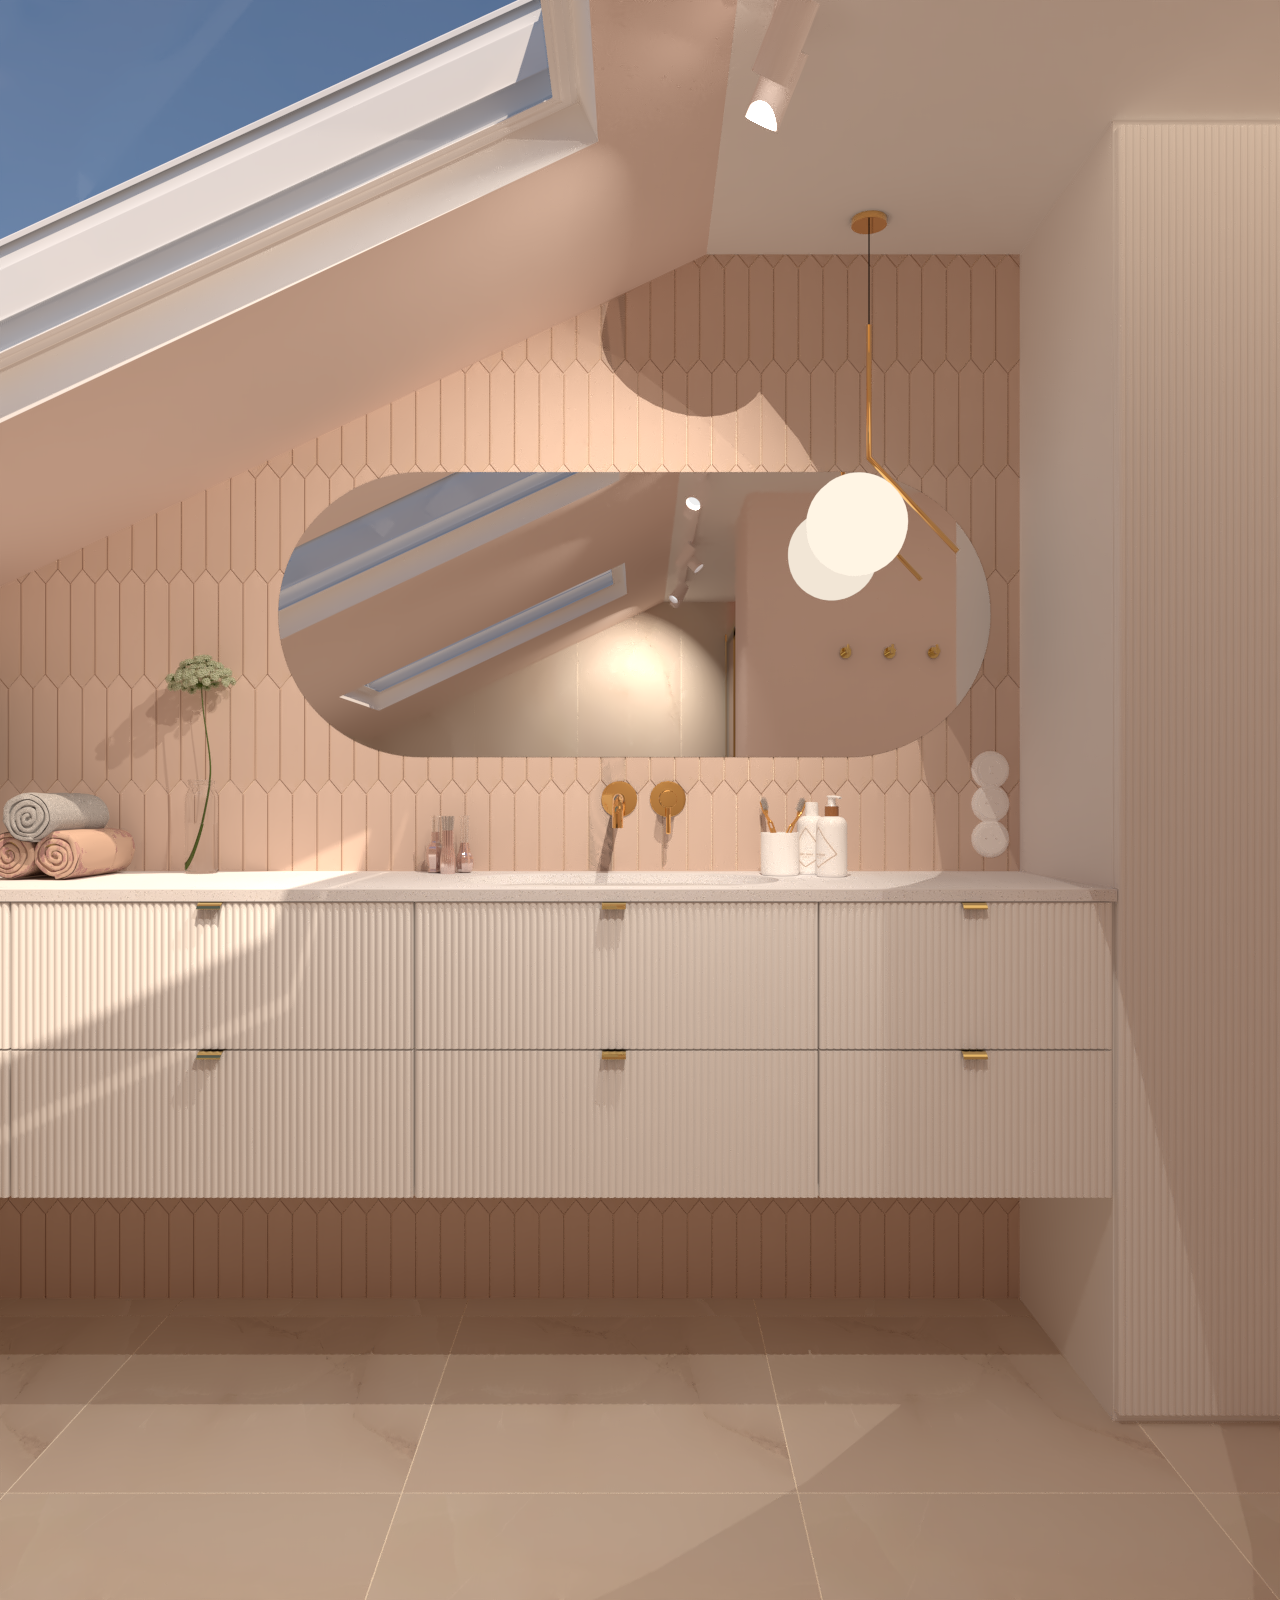 Różowa łazienka z płytkami kanciastymi, ryflowanymi białymi frontami i owalnym poziomym lustrem.